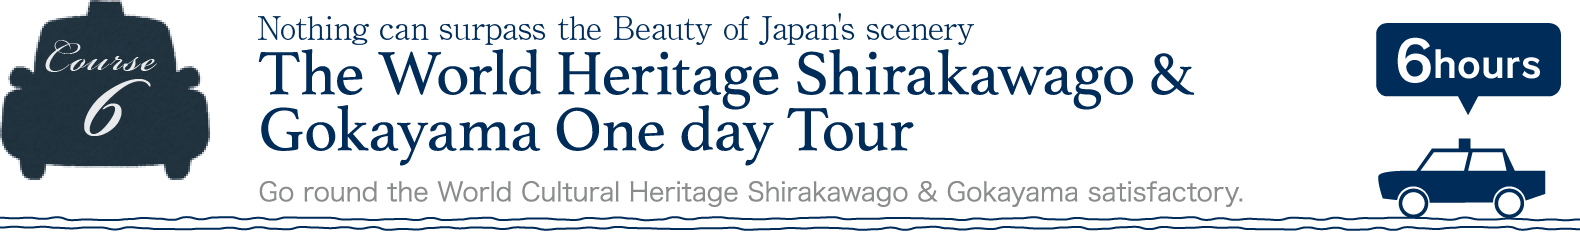 The World Heritage Shirakawago & Gokayama One day Tour